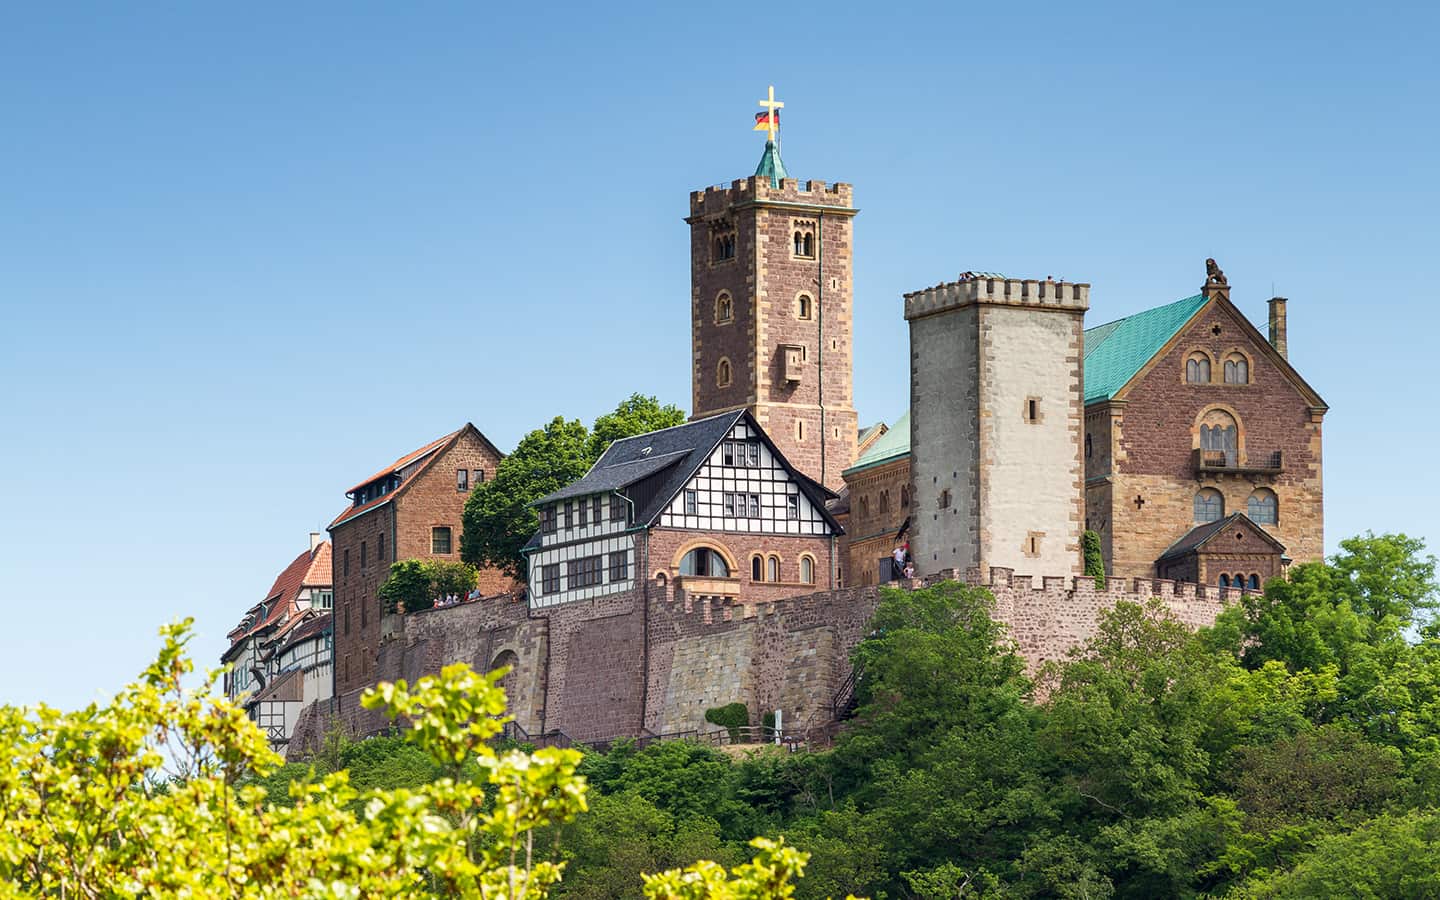 Blick auf die berühmte Wartburg - ein Weltkulturerbe, Thüringen, Deutschland